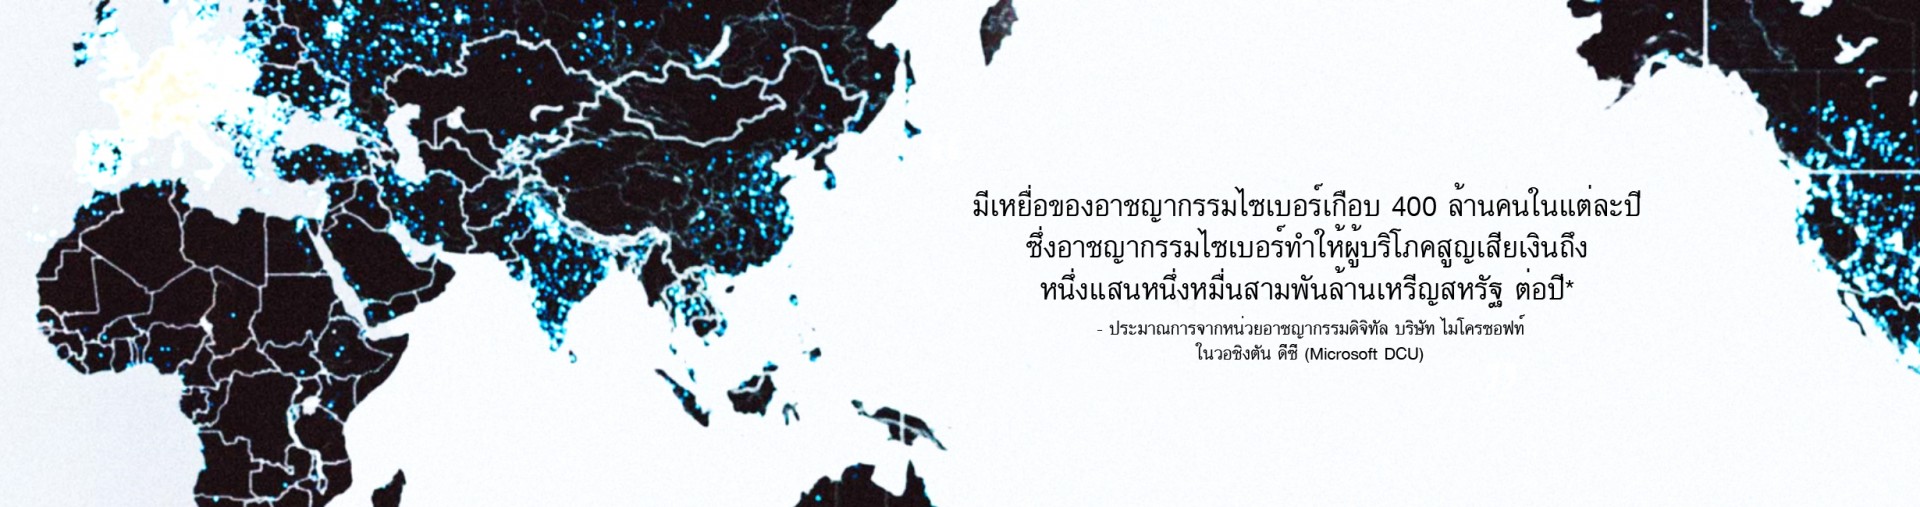 ไมโครซอฟท์จัดงานเสวนา Microsoft Thailand Cyber Trust Experience ร่วมต่อสู้กับอาชญากรรมบนโลกออนไลน์